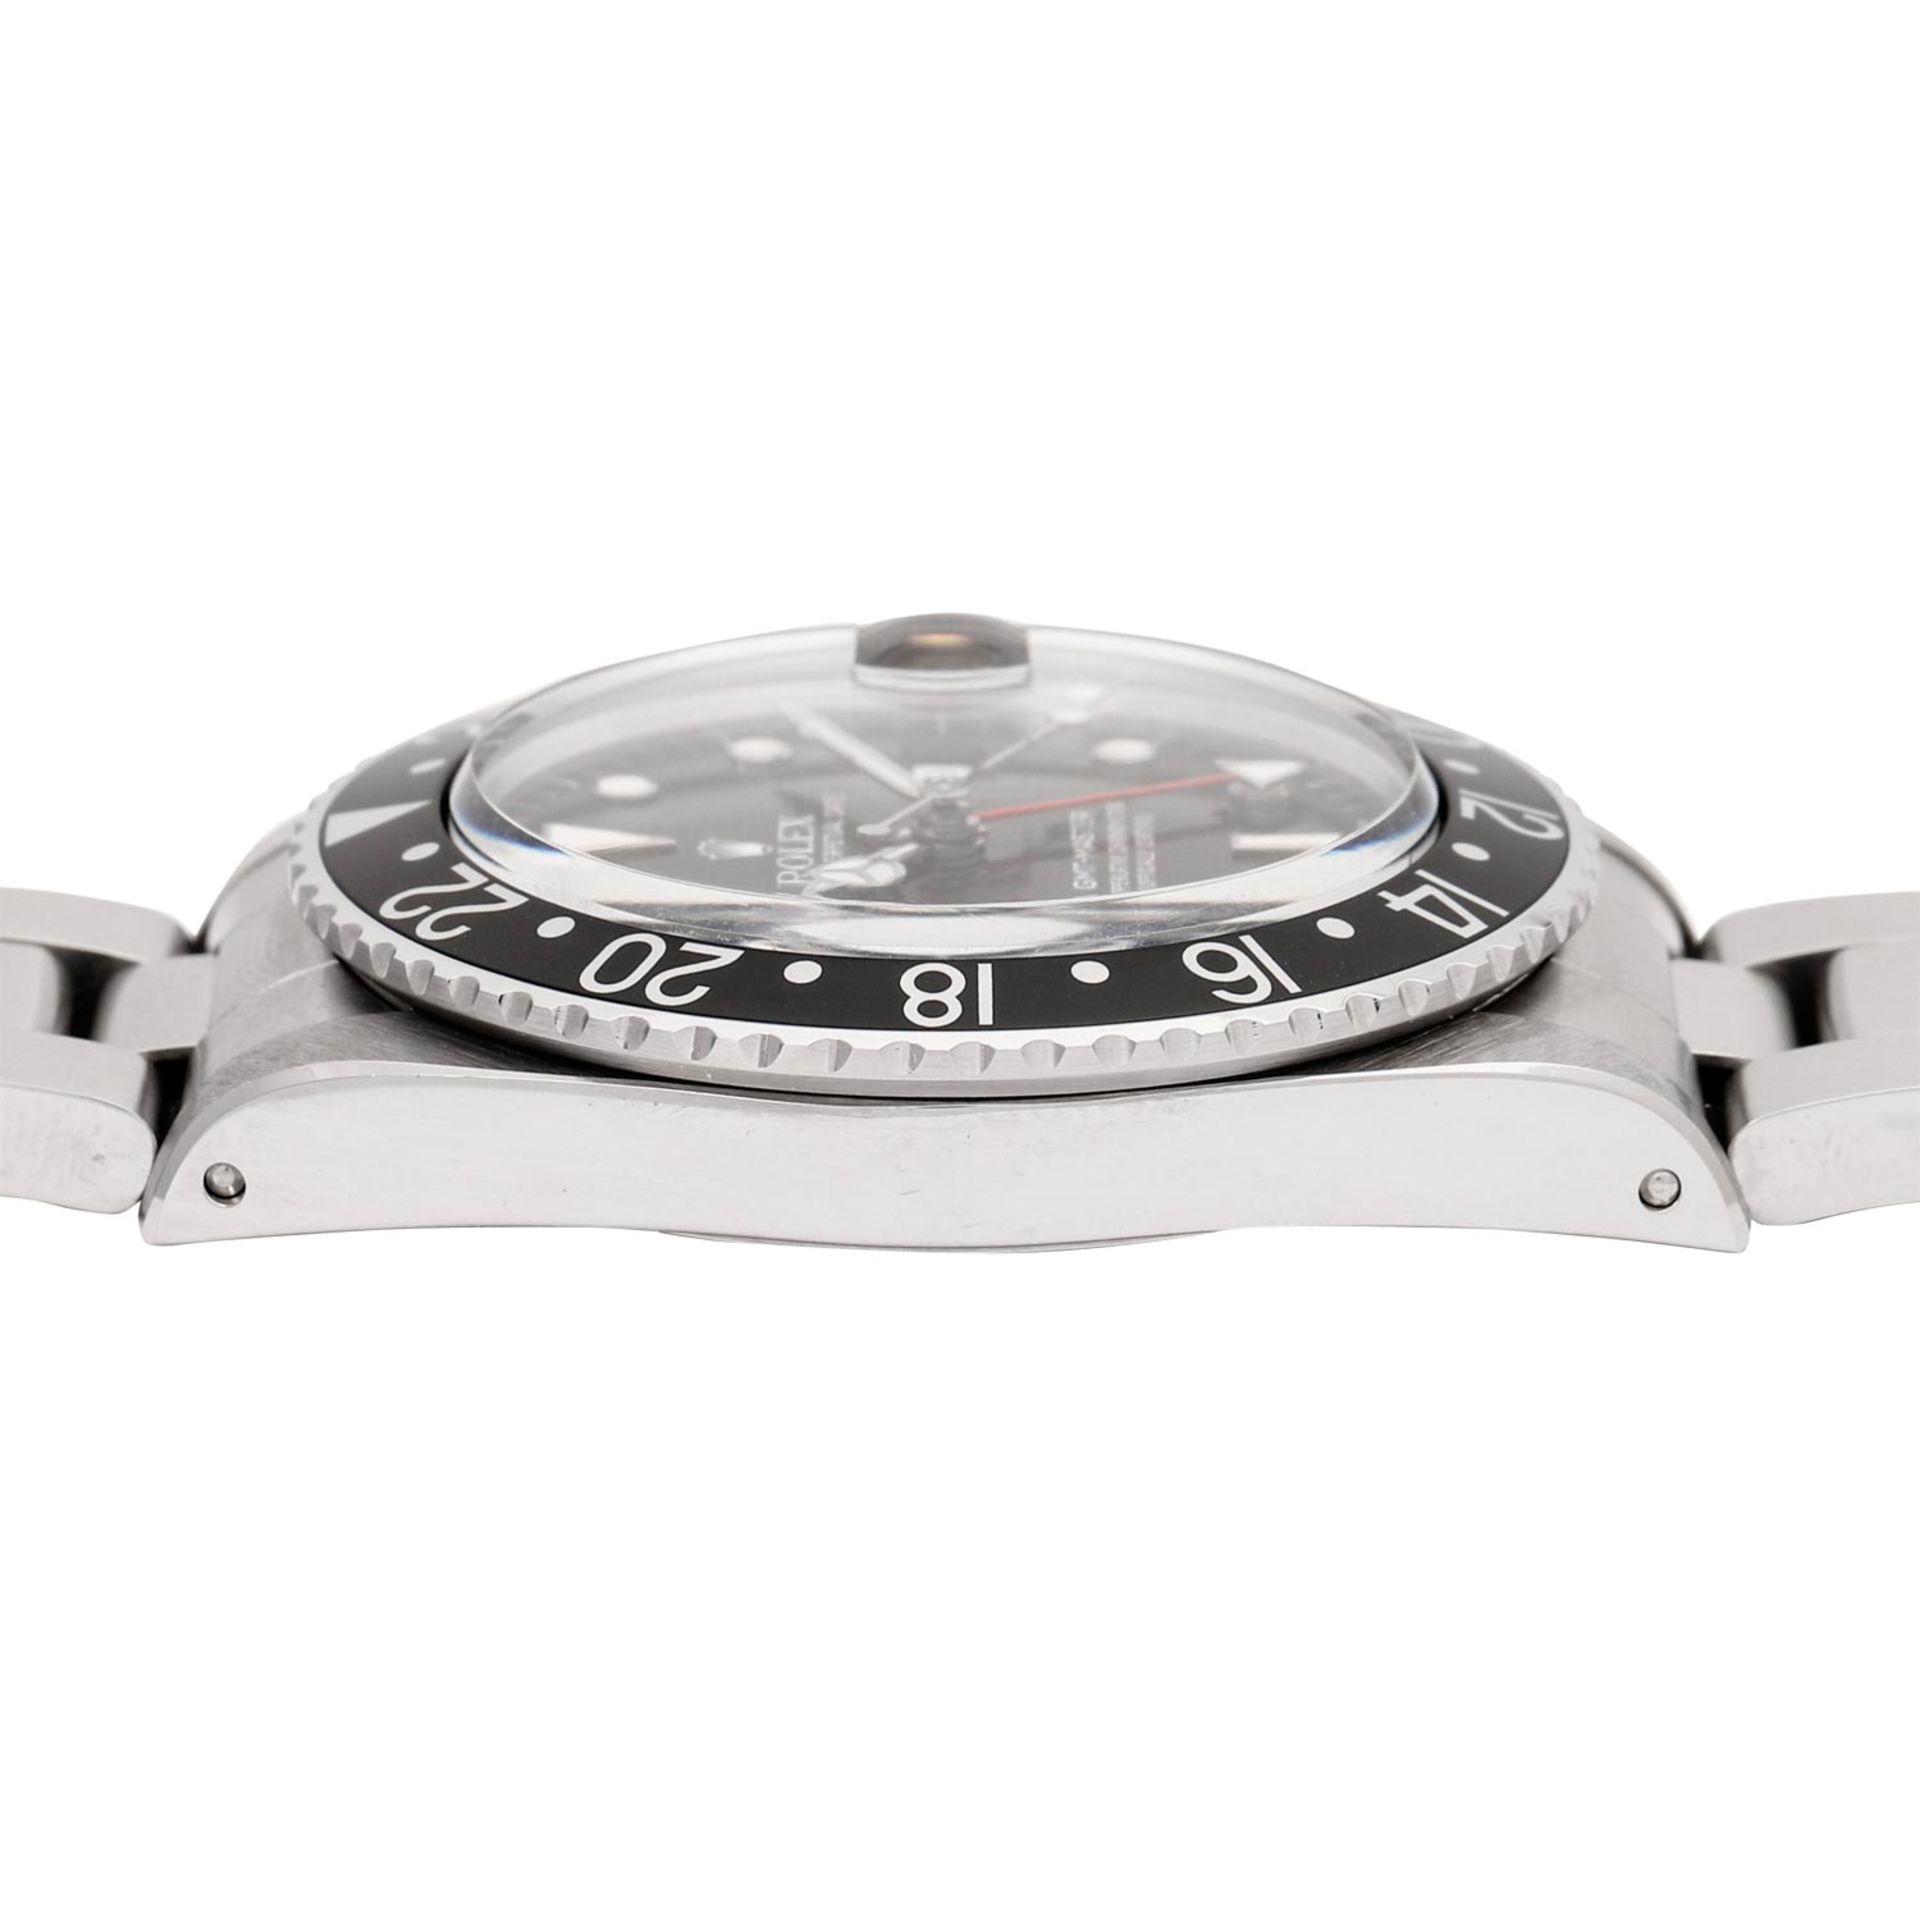 ROLEX Vintage GMT-MASTER "Stardust", Ref. 16750. Armbanduhr aus 1988. - Bild 4 aus 8